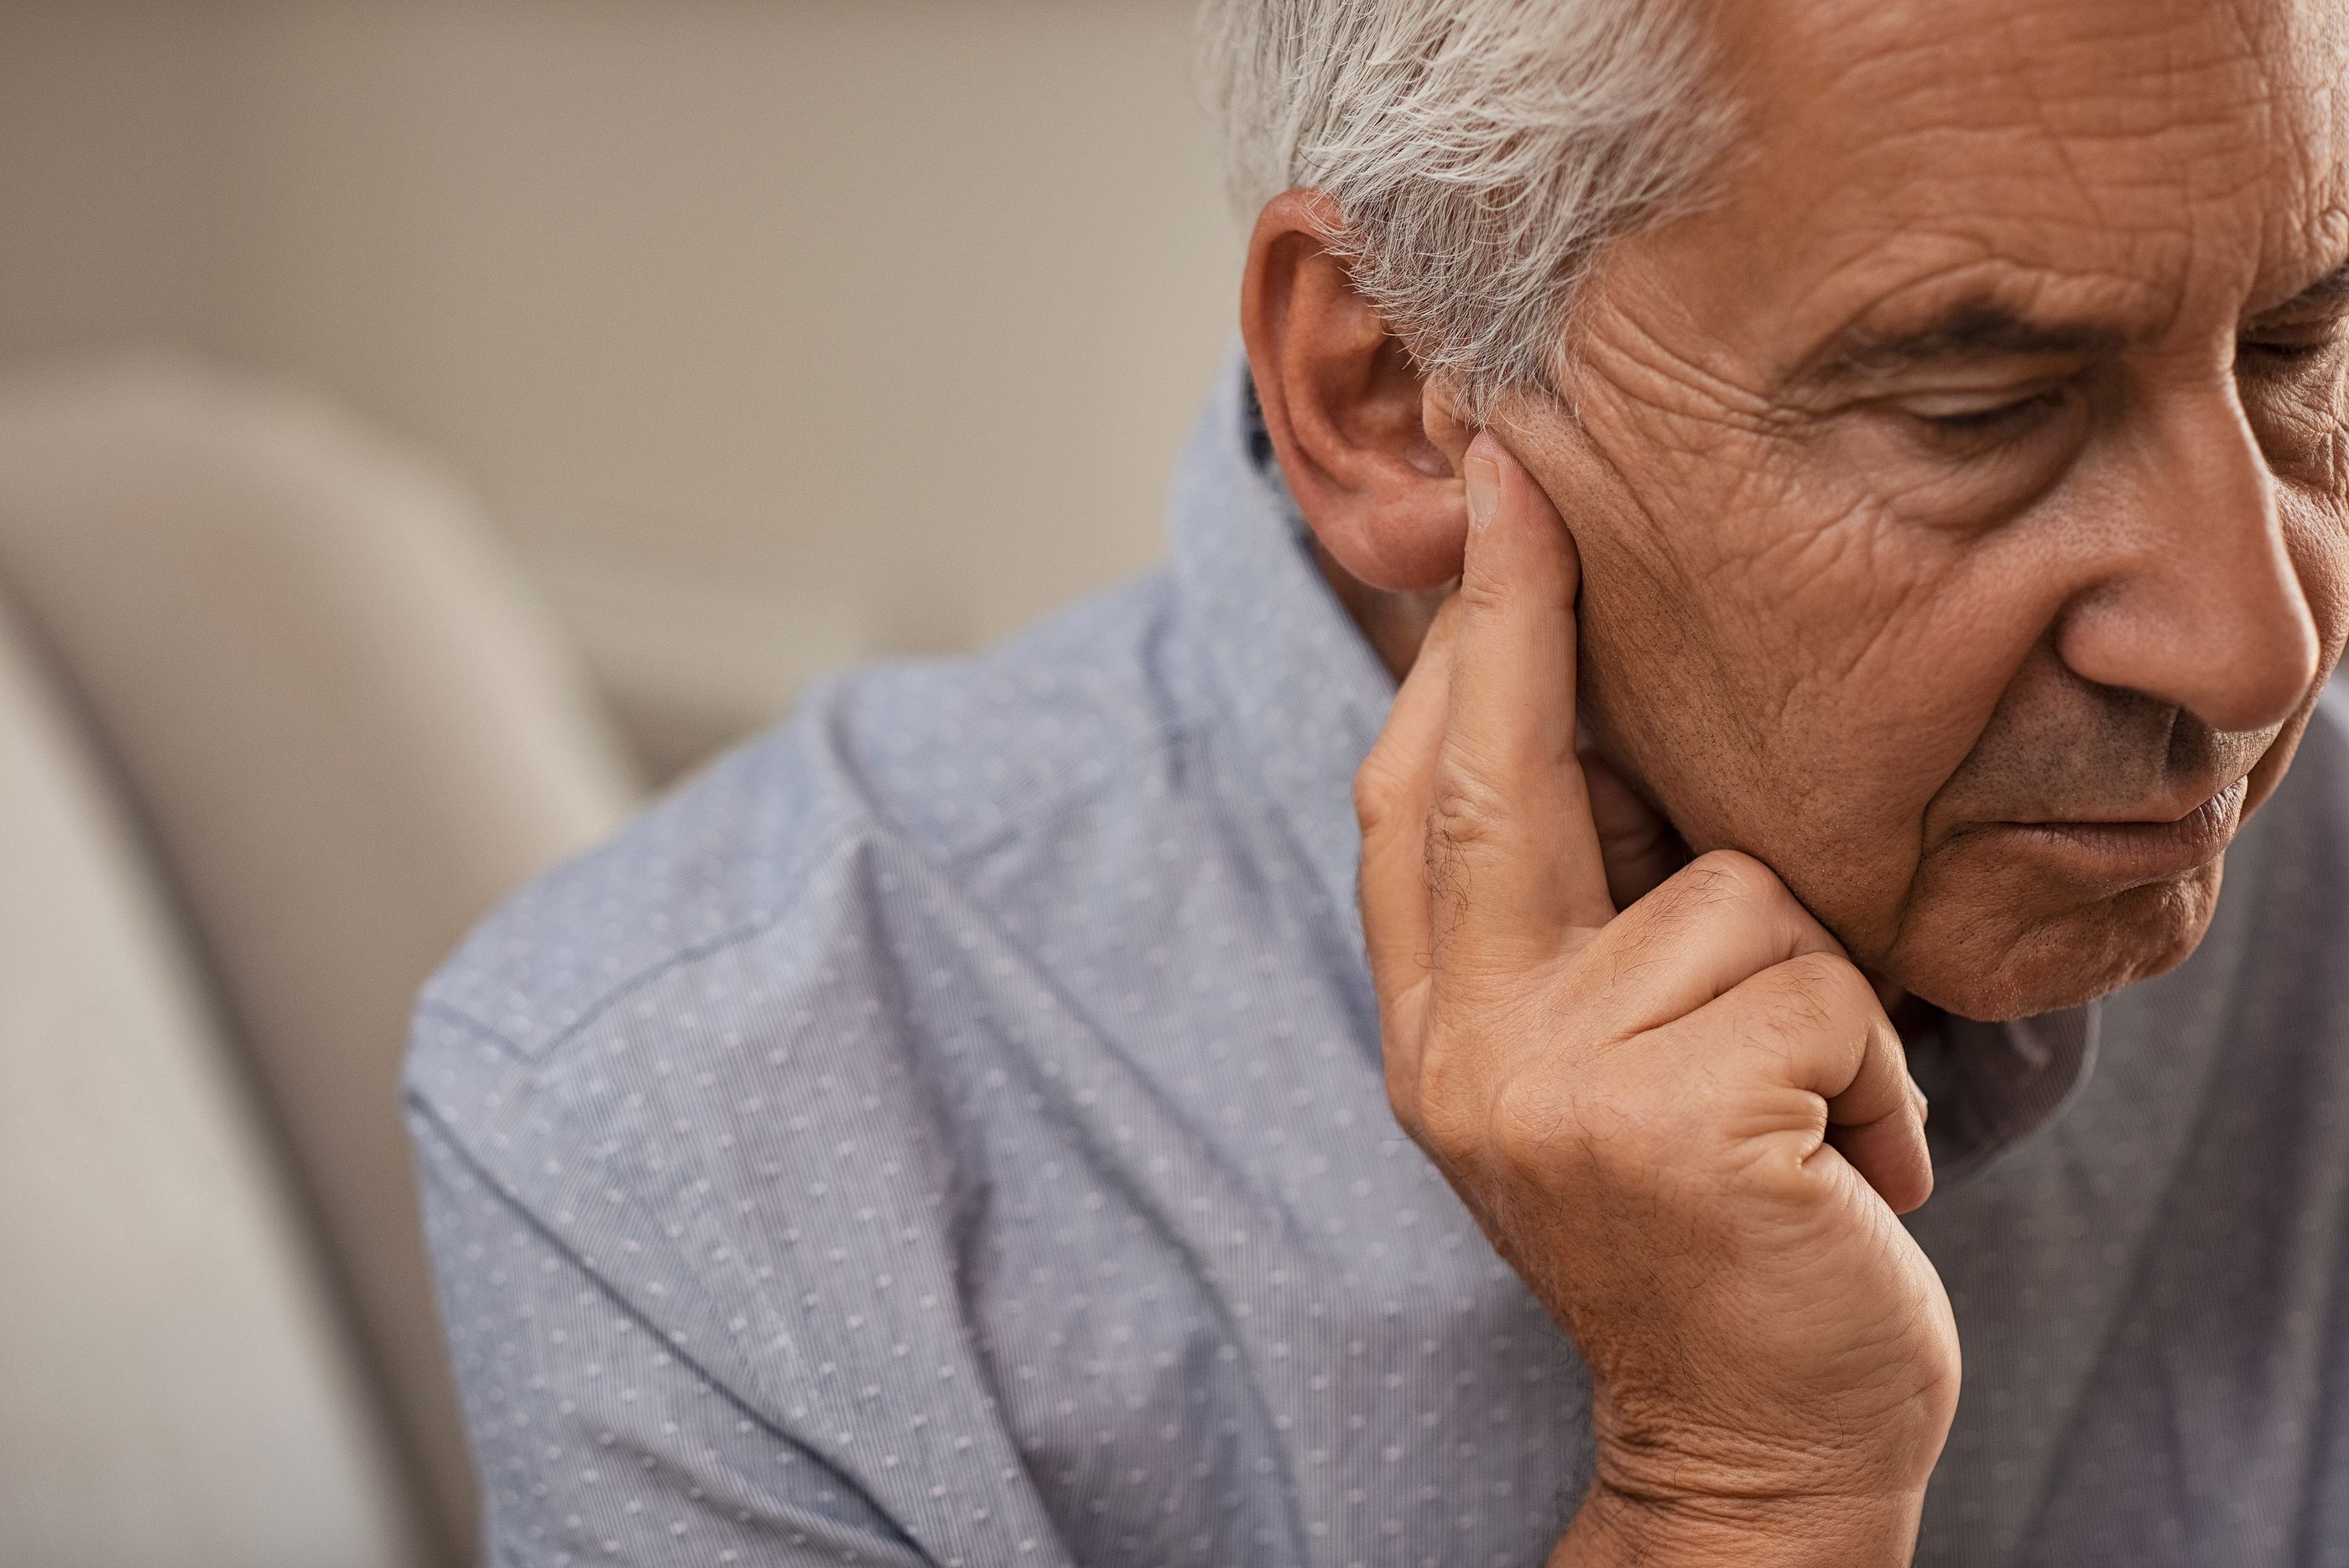 Causas de la pérdida auditiva relacionada con la edad